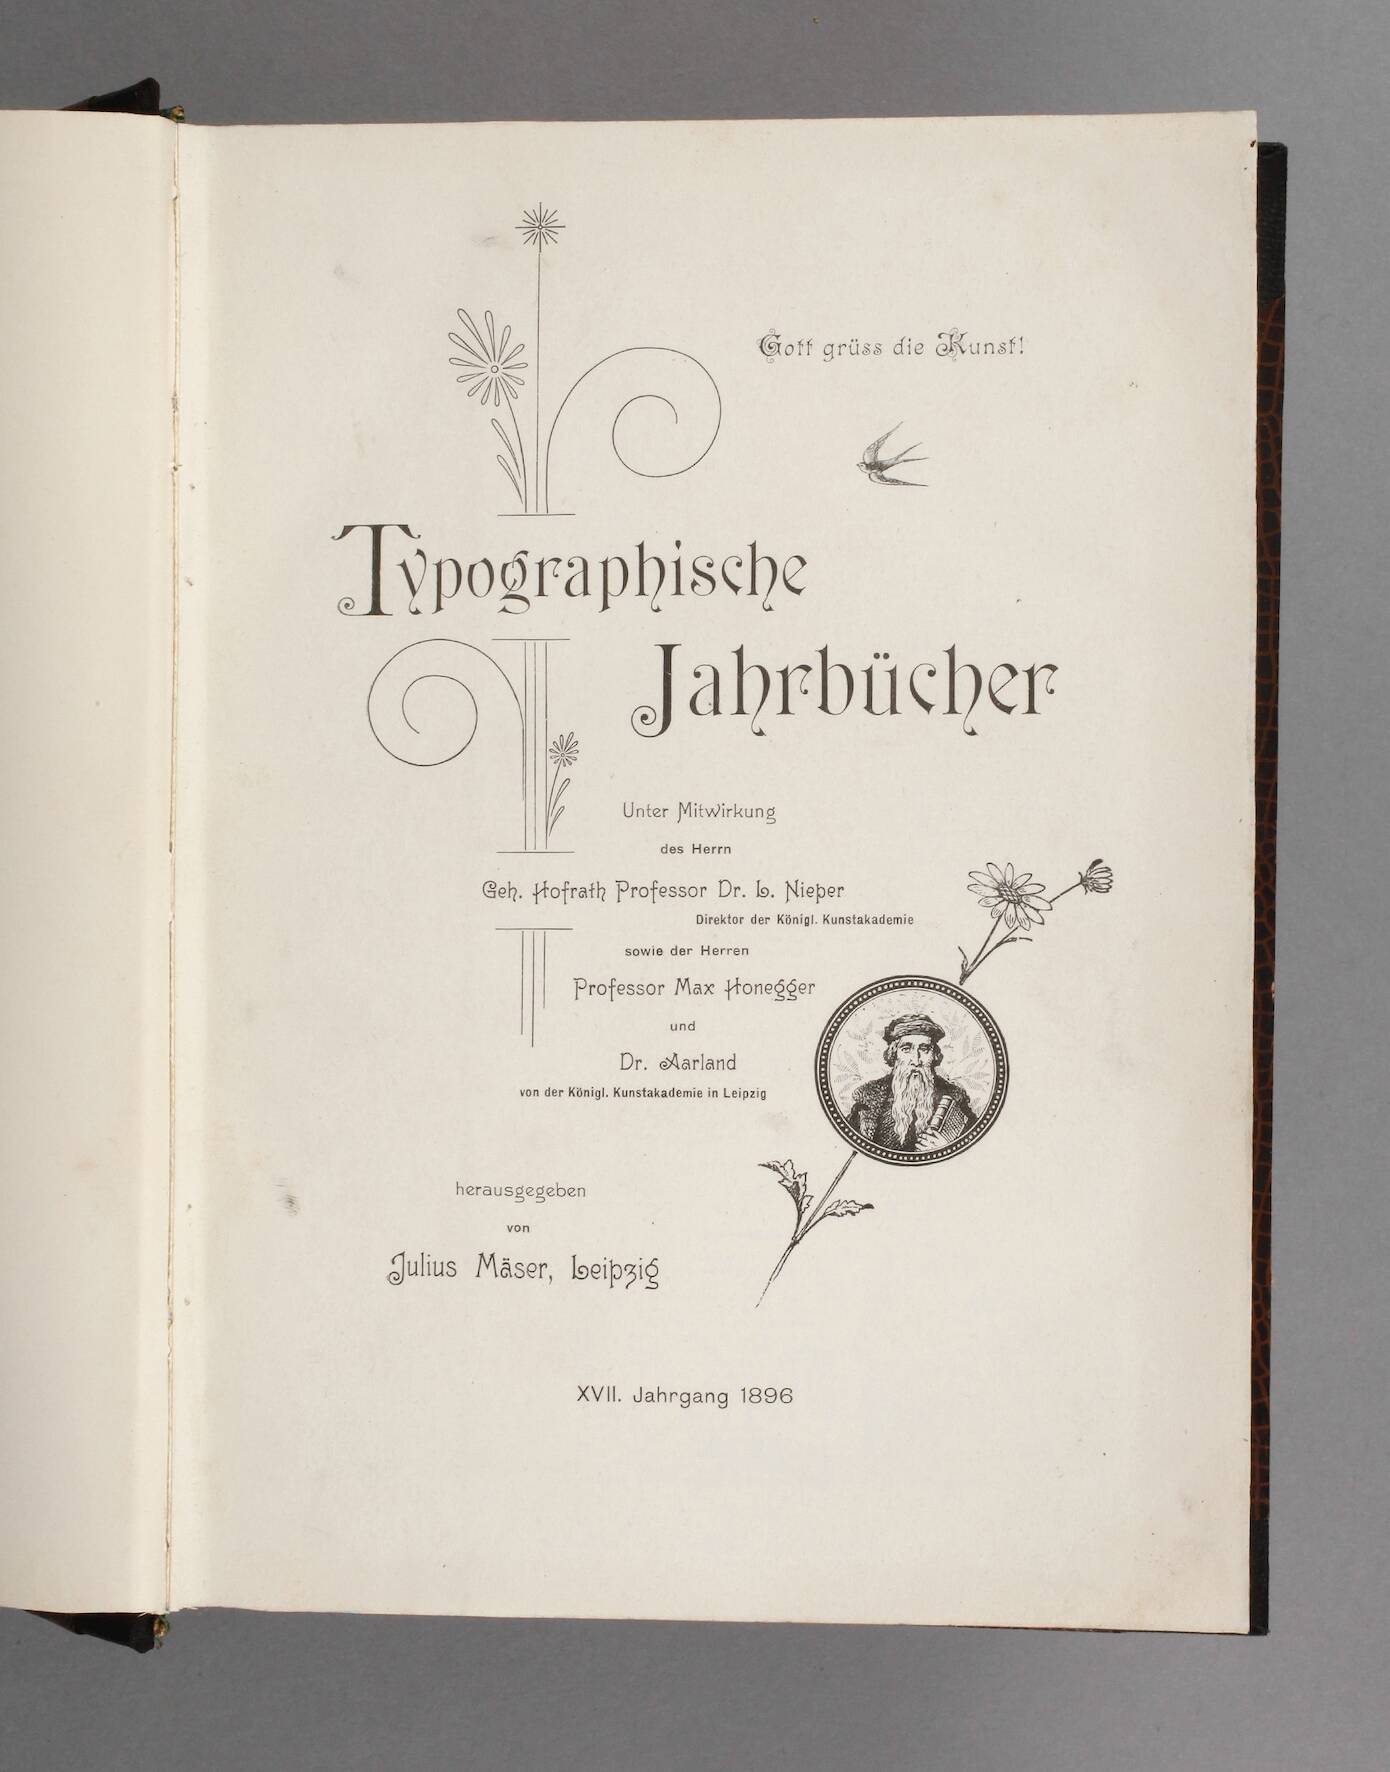 Typographische Jahrbücher